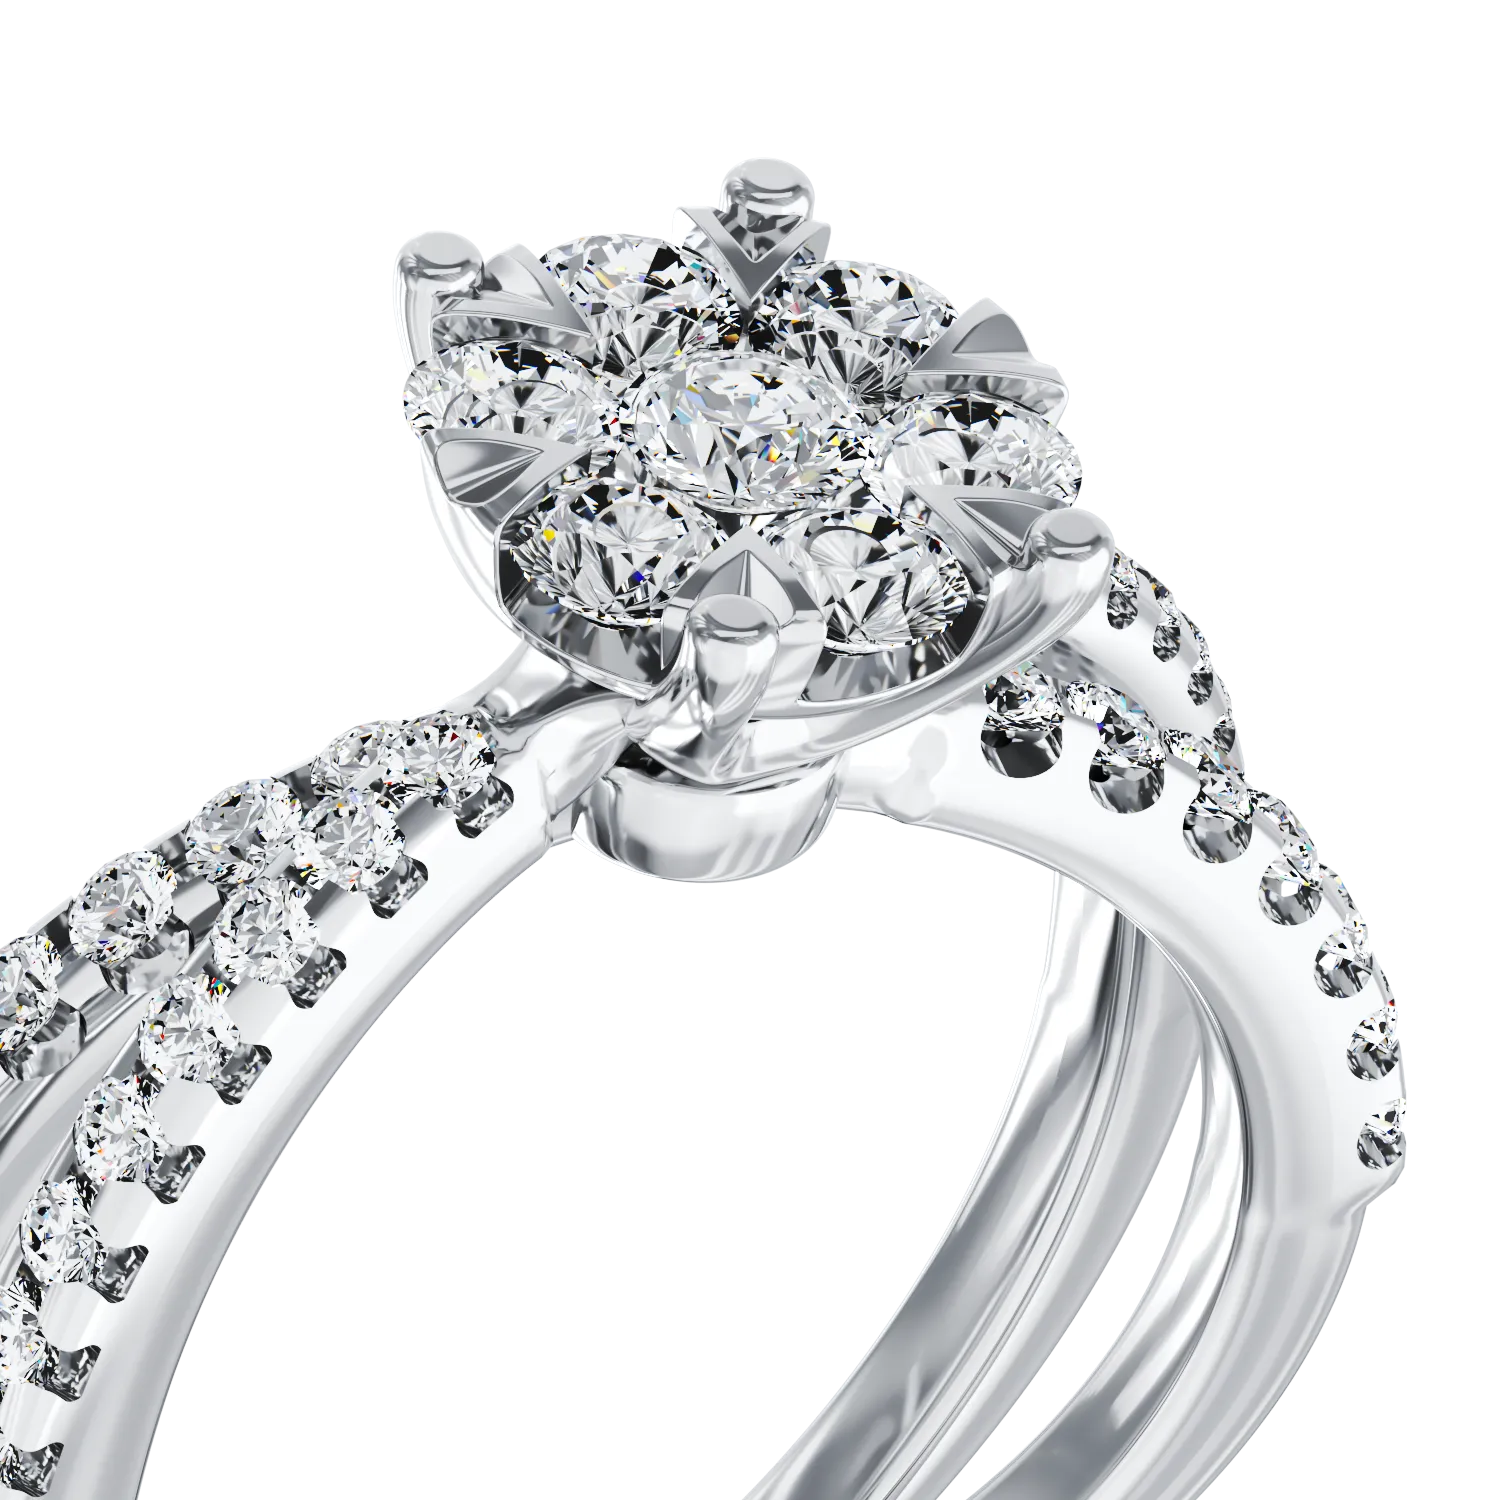 Eljegyzési gyűrű 18K-os fehér aranyból 0.6ct gyémánttal. Gramm: 2,8